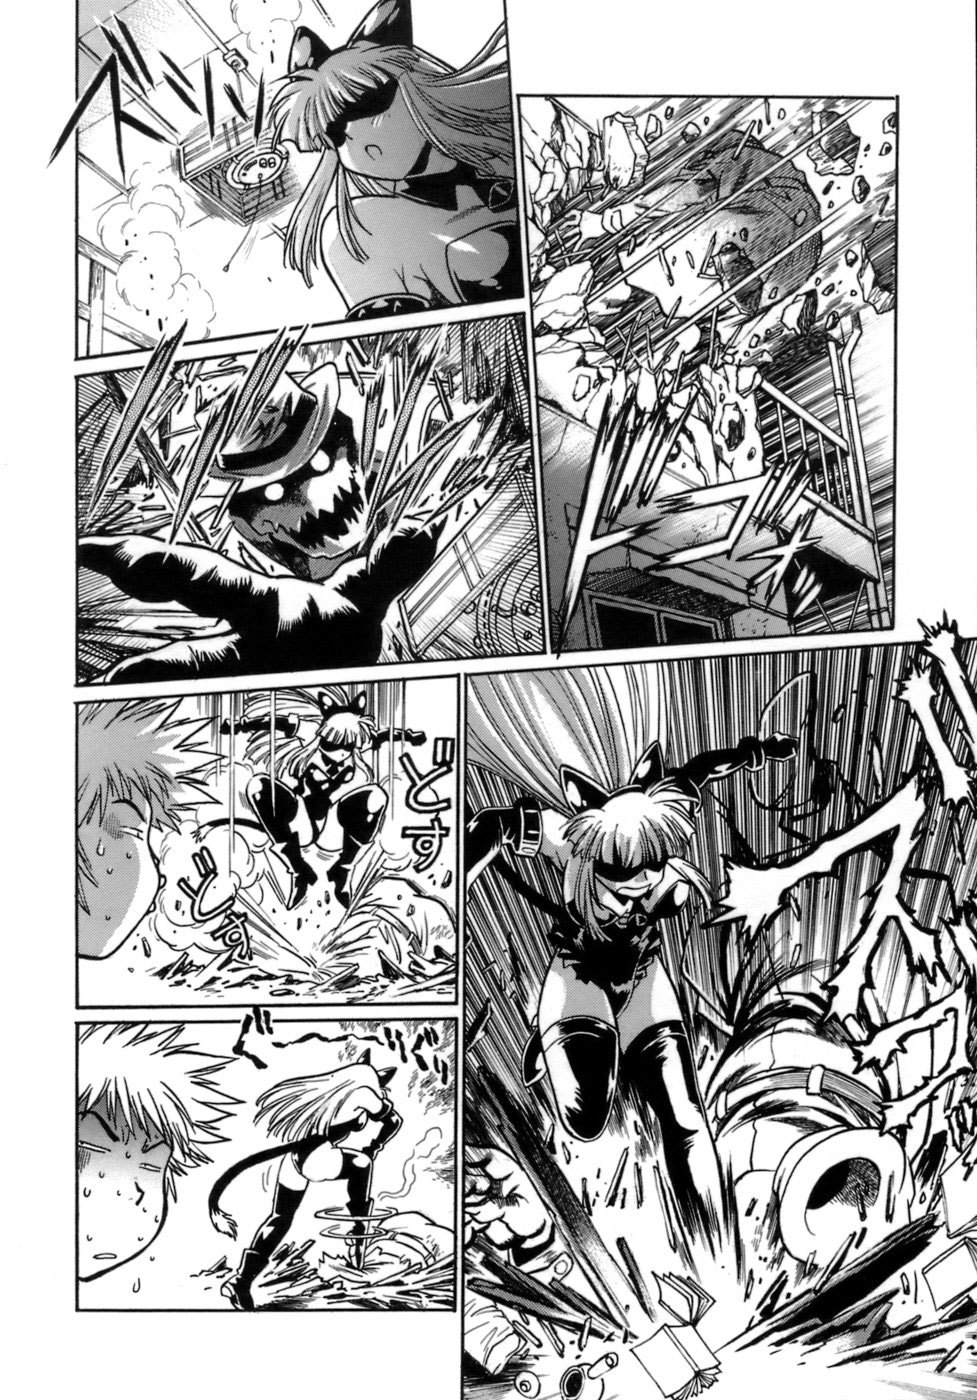 Tail Chaser Vol.1 16 hentai manga